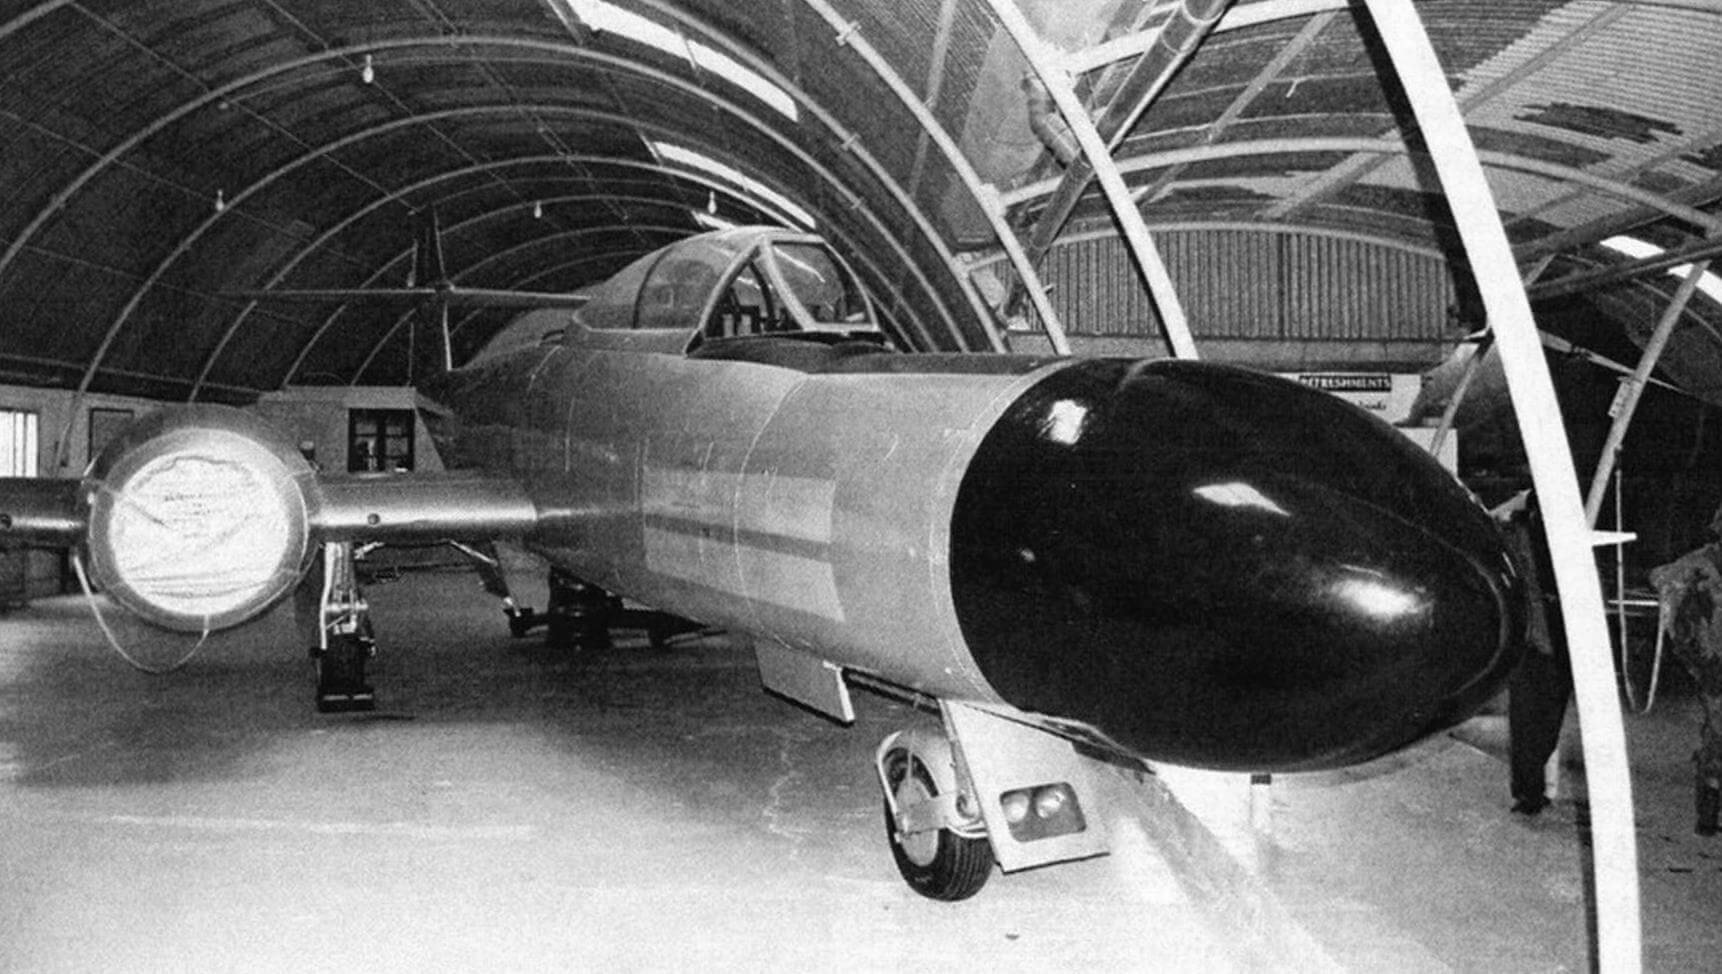 Довольно редкая поздняя модификация истребителя Meteor N.F.14